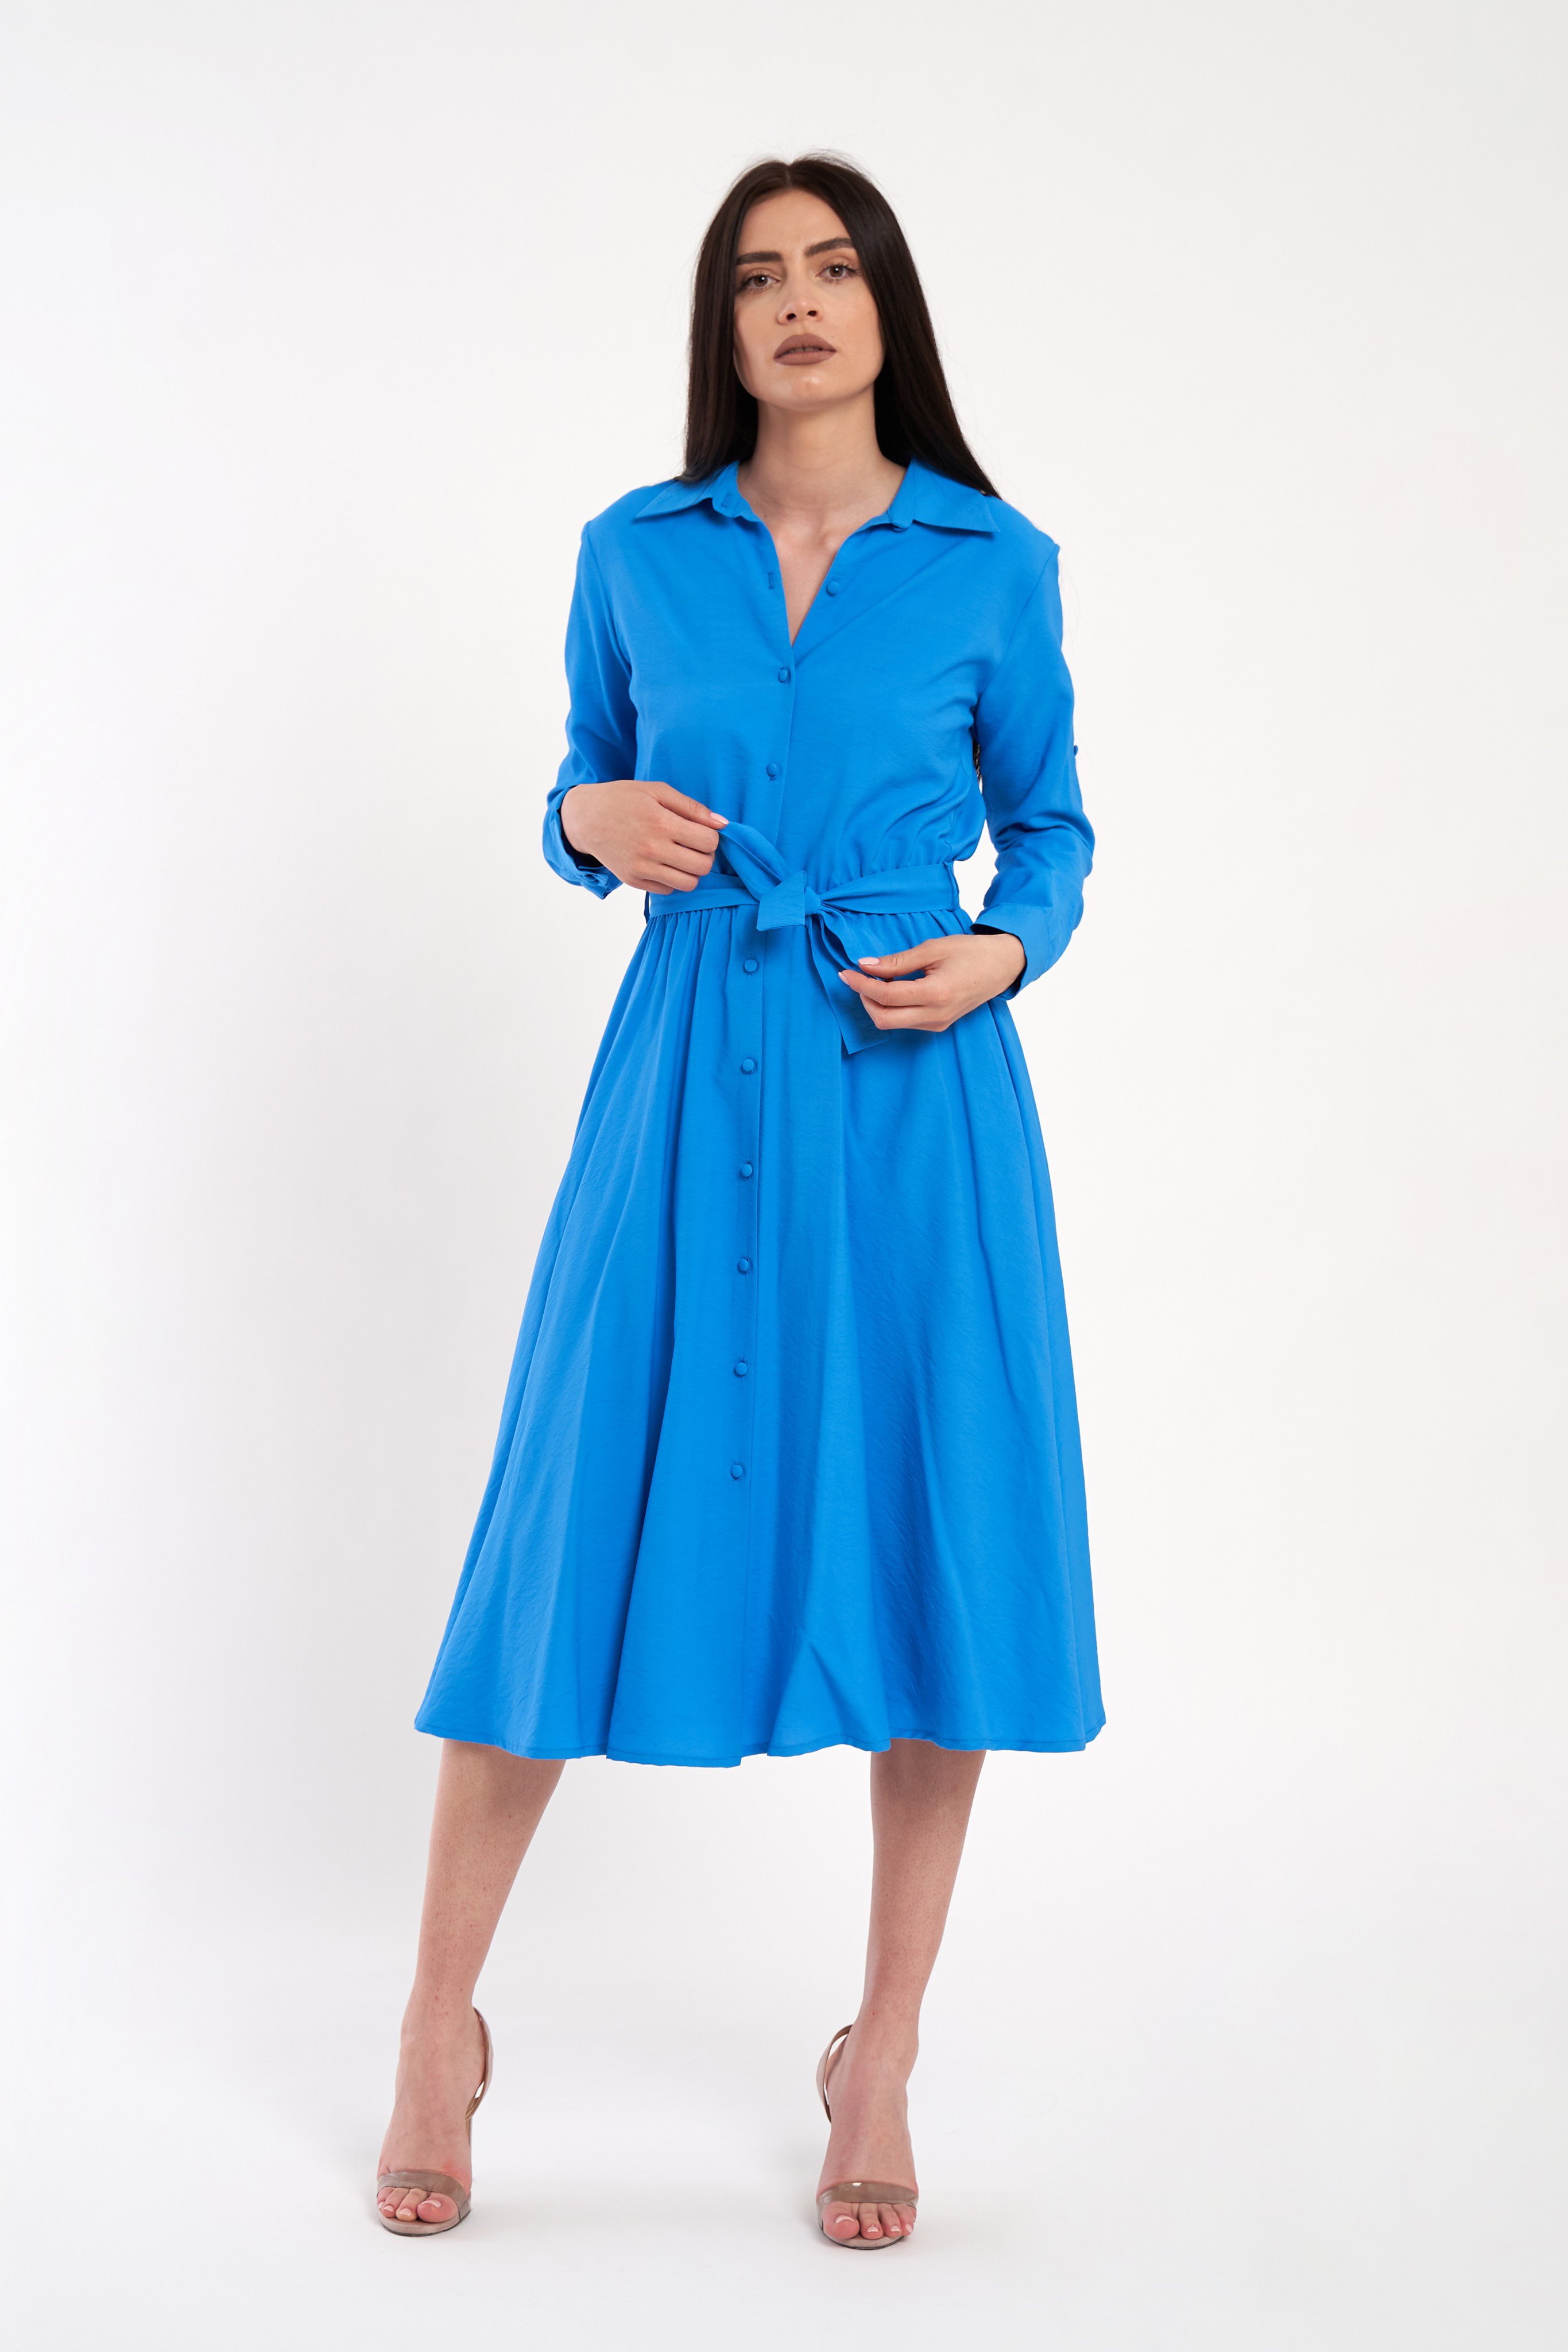 Rochie camasa cu maneci lungi care se pot micsora pana la trei sferturi, albastru